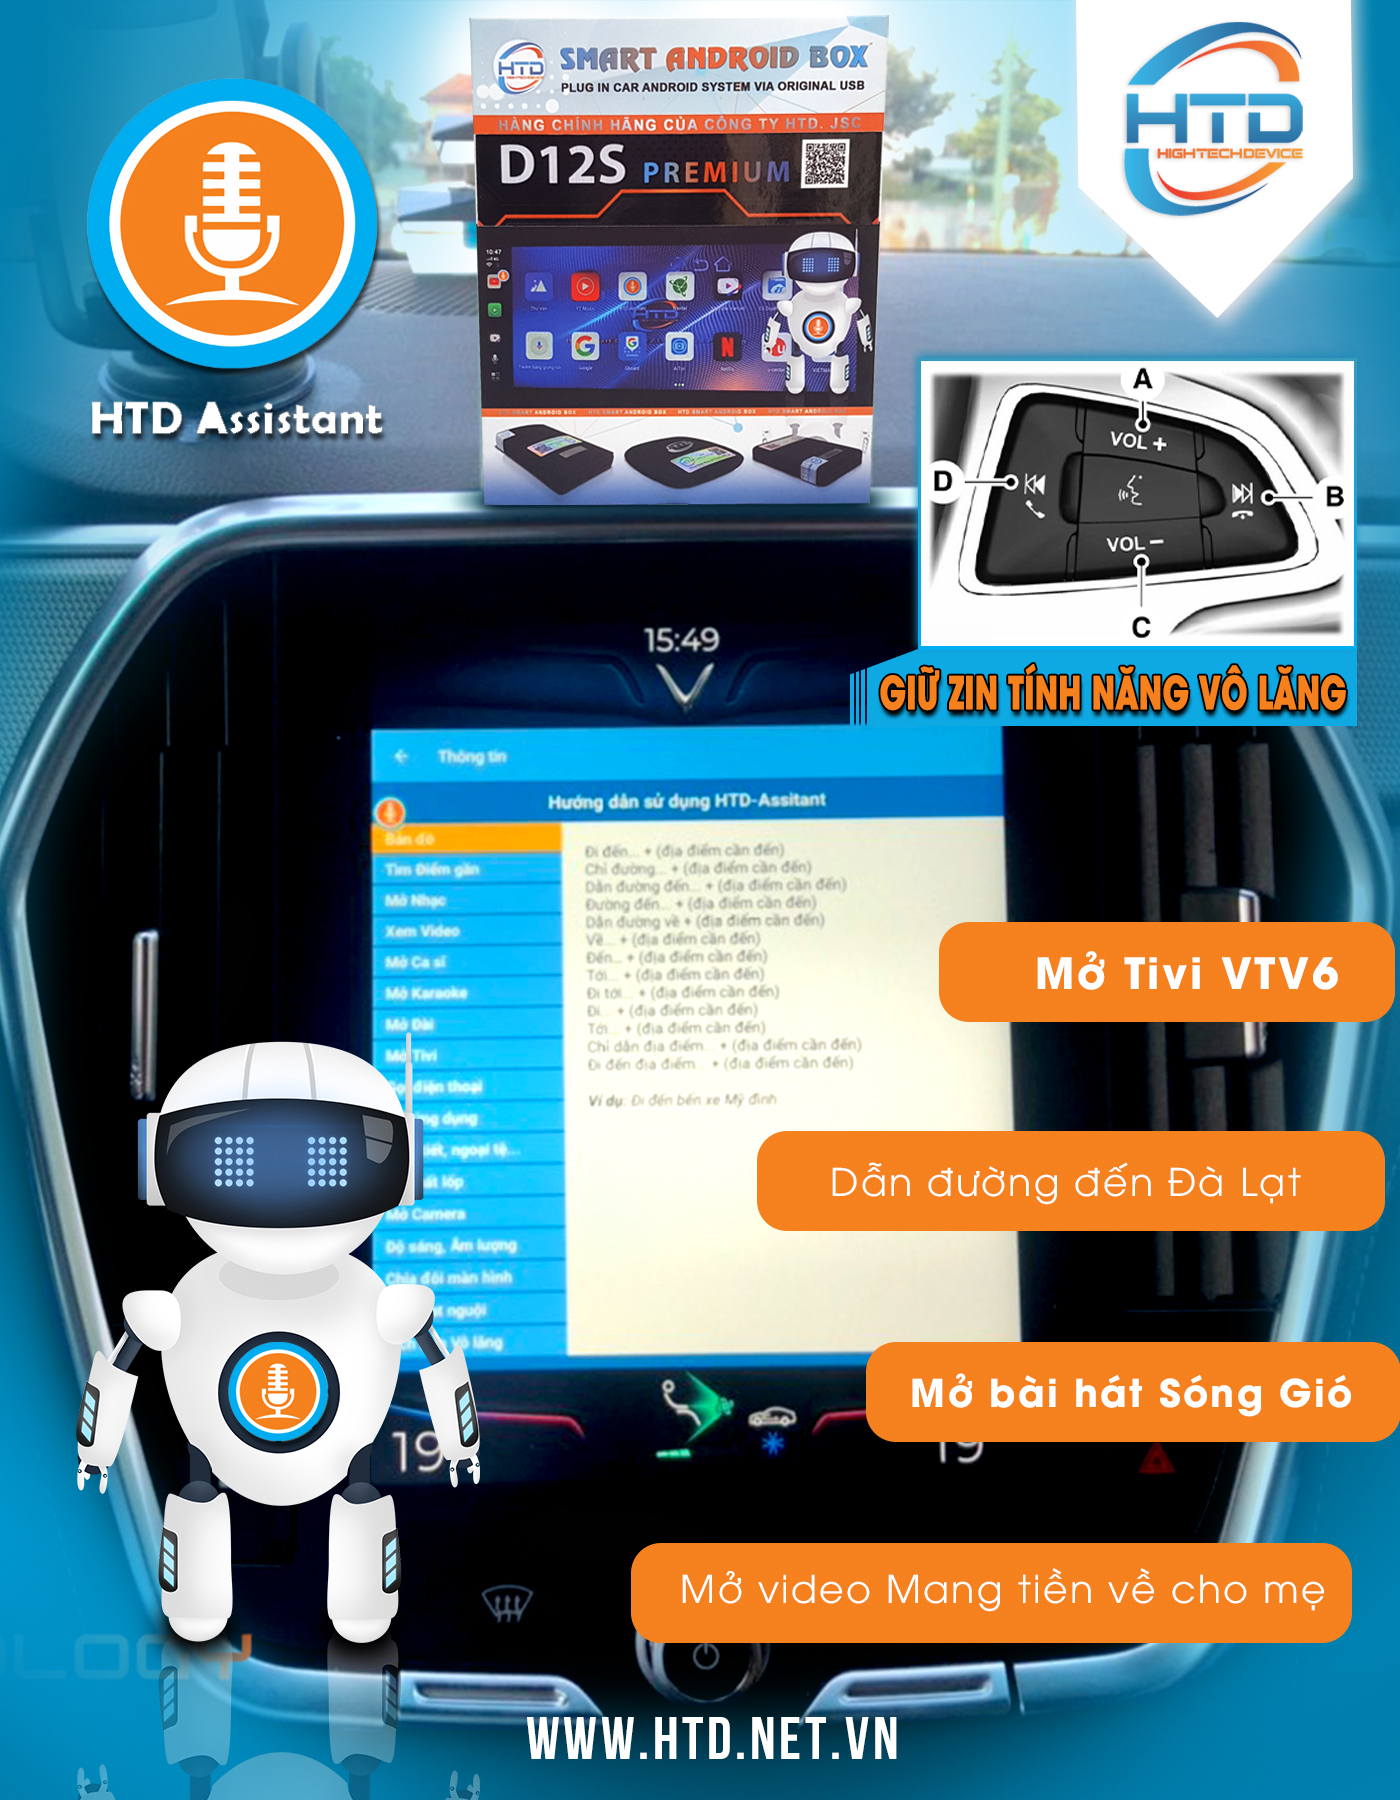 Htd Smart Carplay Ai Box D12s Premium – Cpu Snapdragon 8 Core - Tặng Vietmap S1 + Sim 4g 3 Tháng (Ảnh 11)